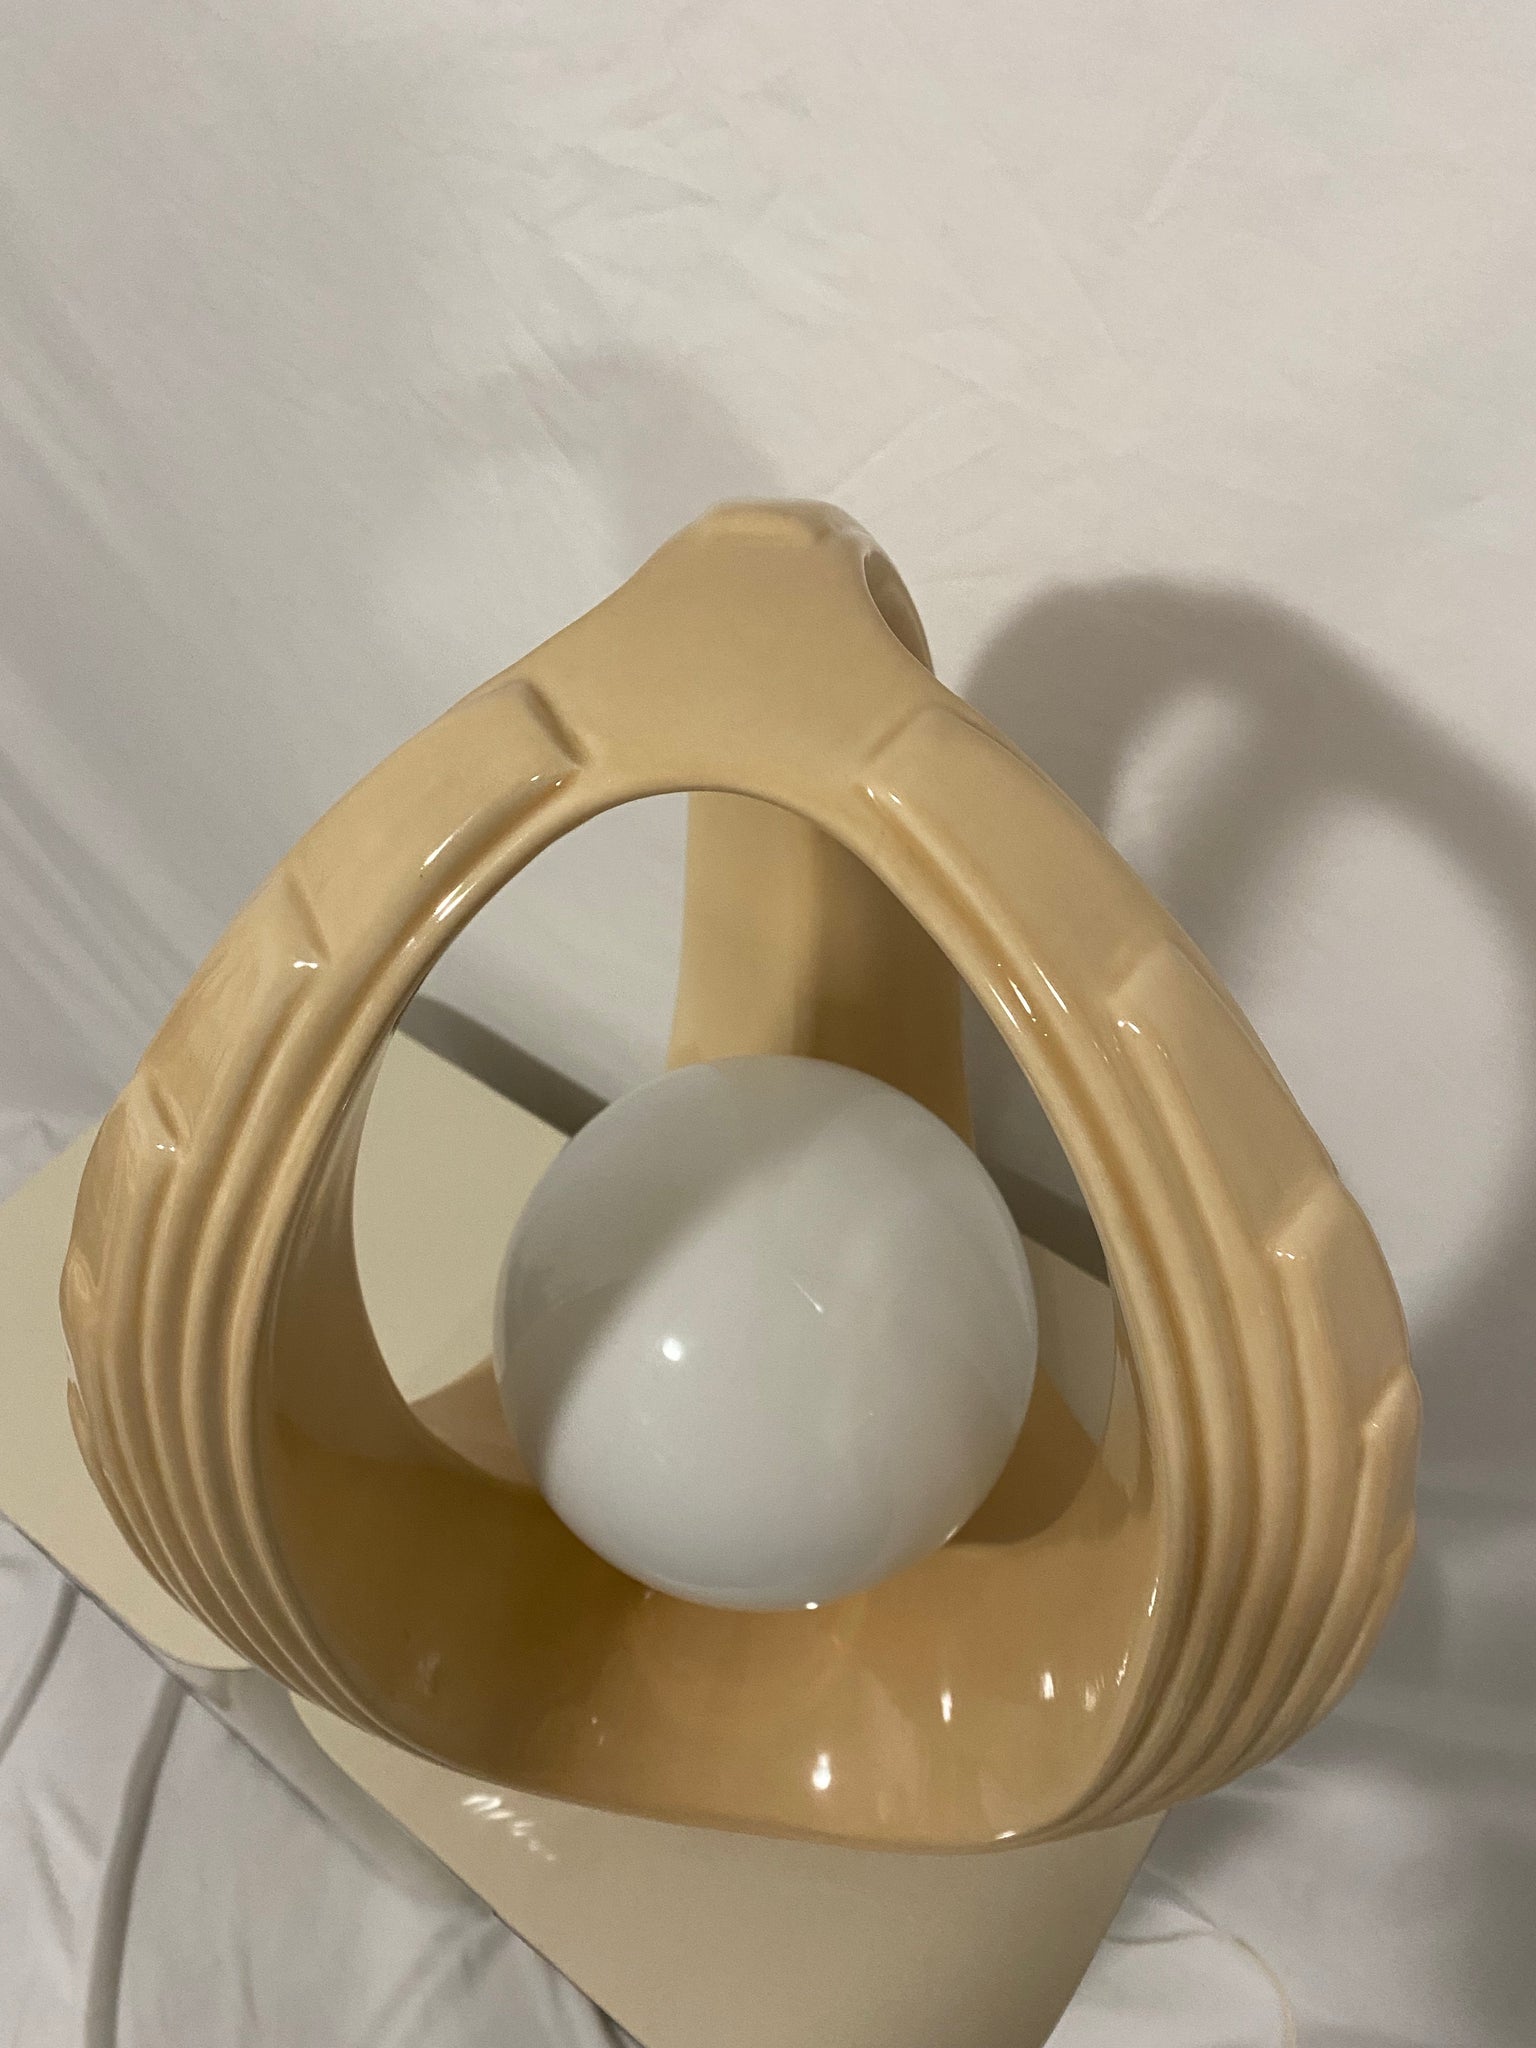 Creamy peach ceramic art deco lamps